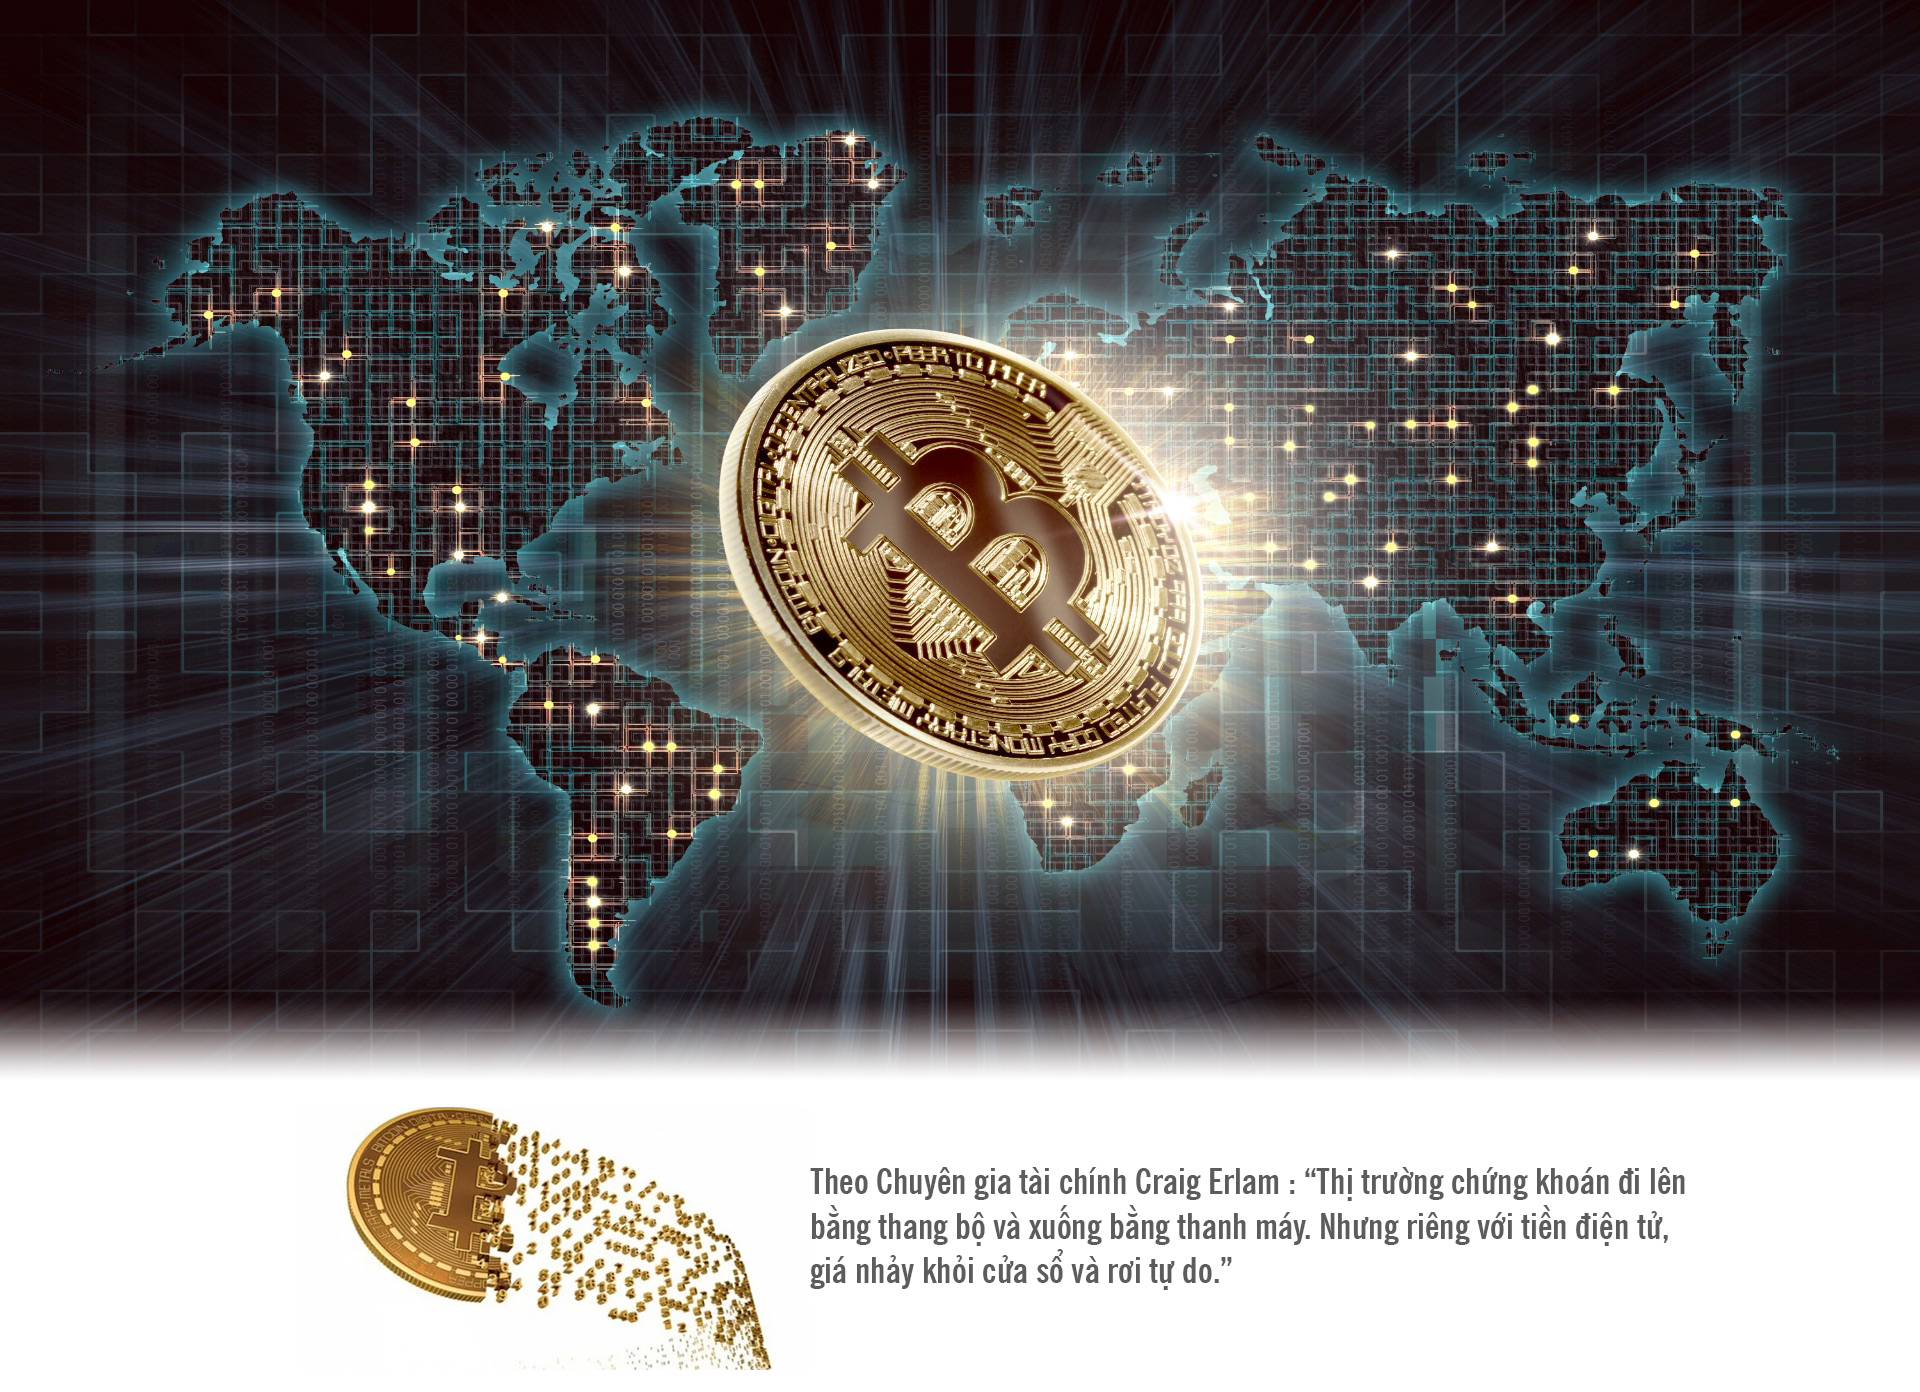 Tiền ảo Bitcoin: Khi giá “nhảy khỏi cửa sổ” và rơi tự do - 1